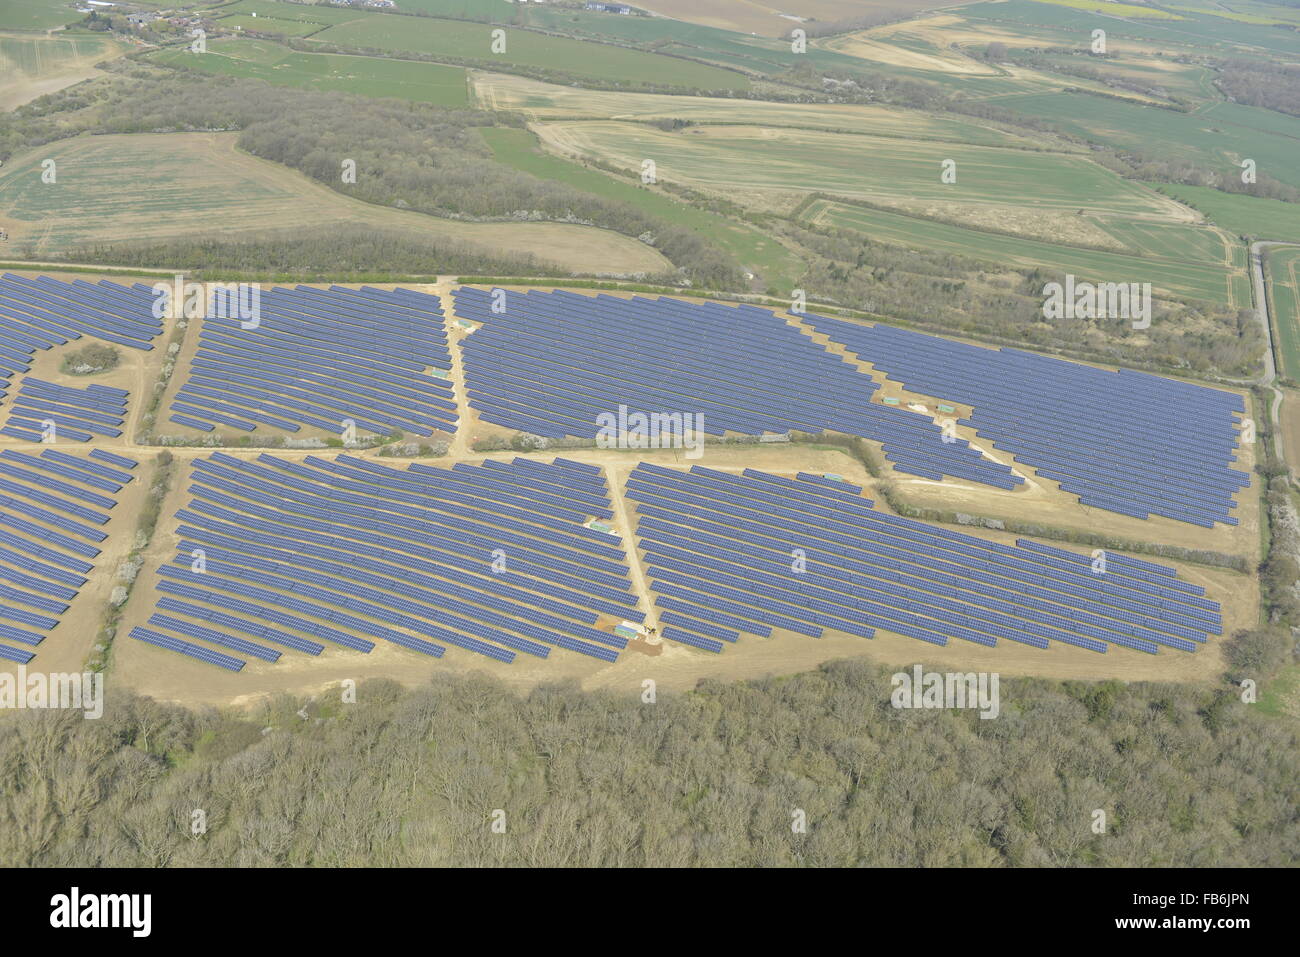 Une vue aérienne d'une ferme solaire dans le Leicestershire Banque D'Images